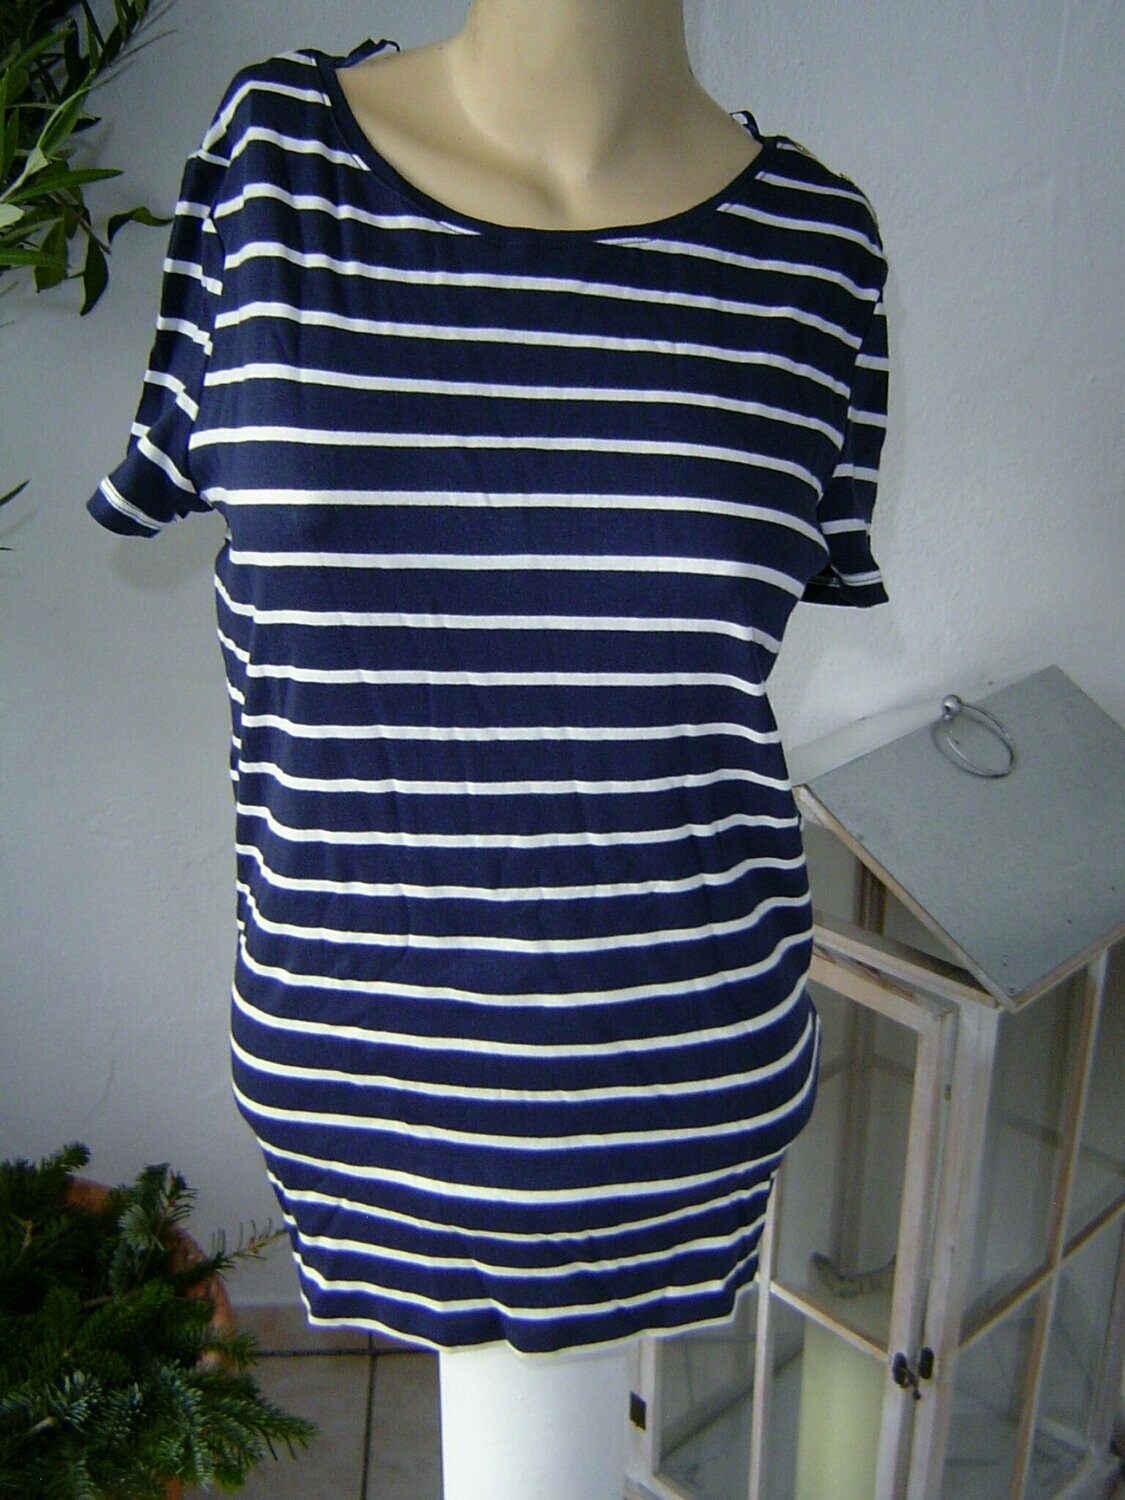 Esprit Damen T-Shirt Gr. 38, 40 (L) blau weiß gestreift stretch Baumwolle